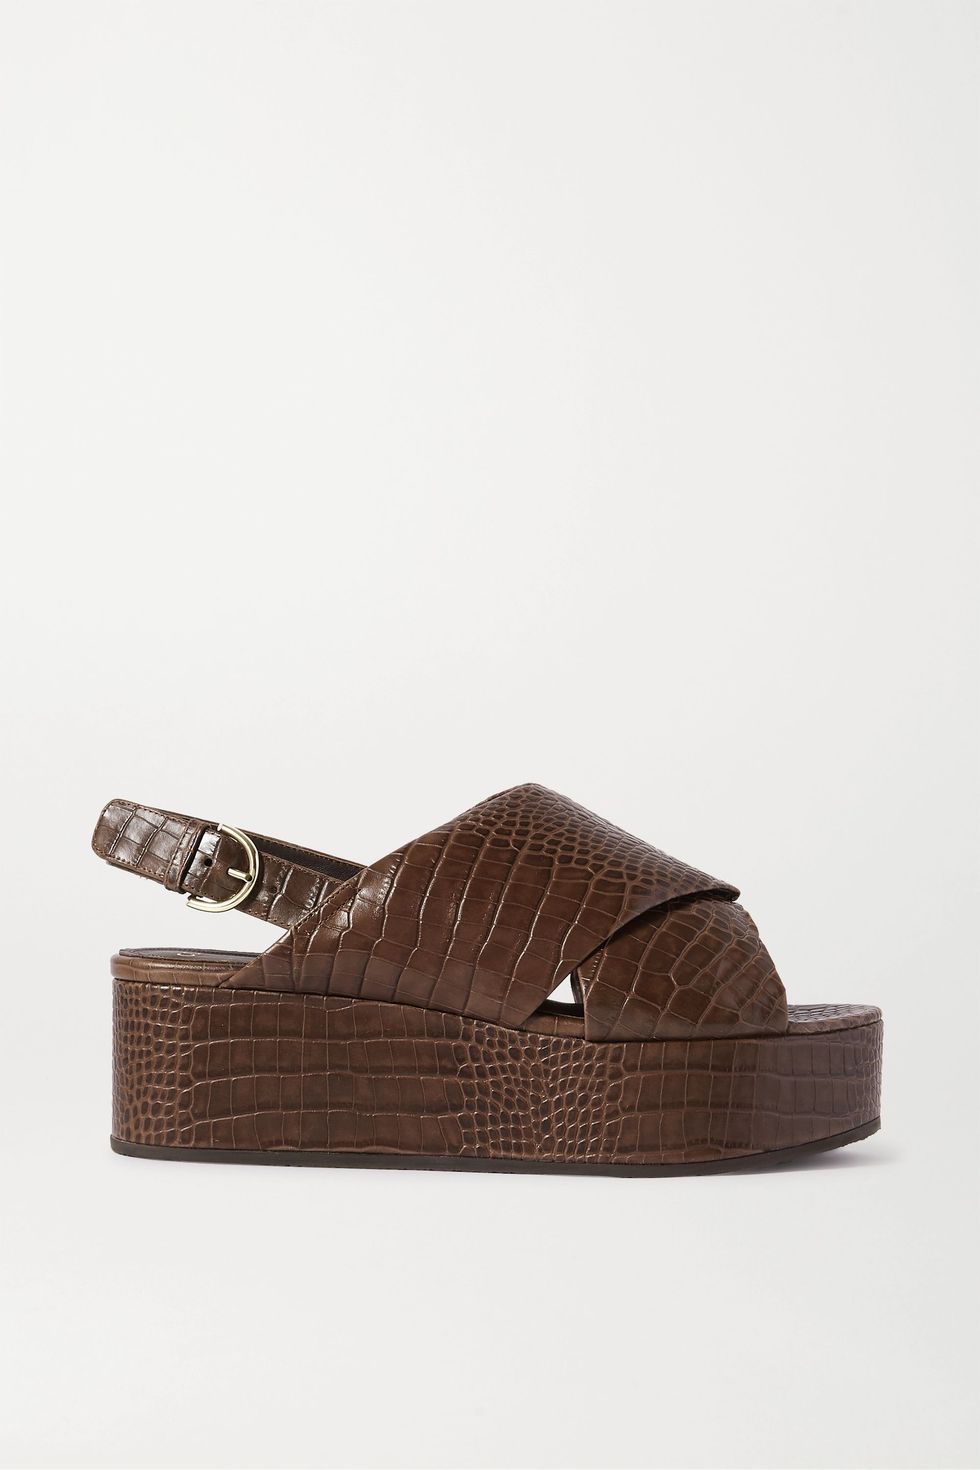 Croc-effect leather platform slingback sandals